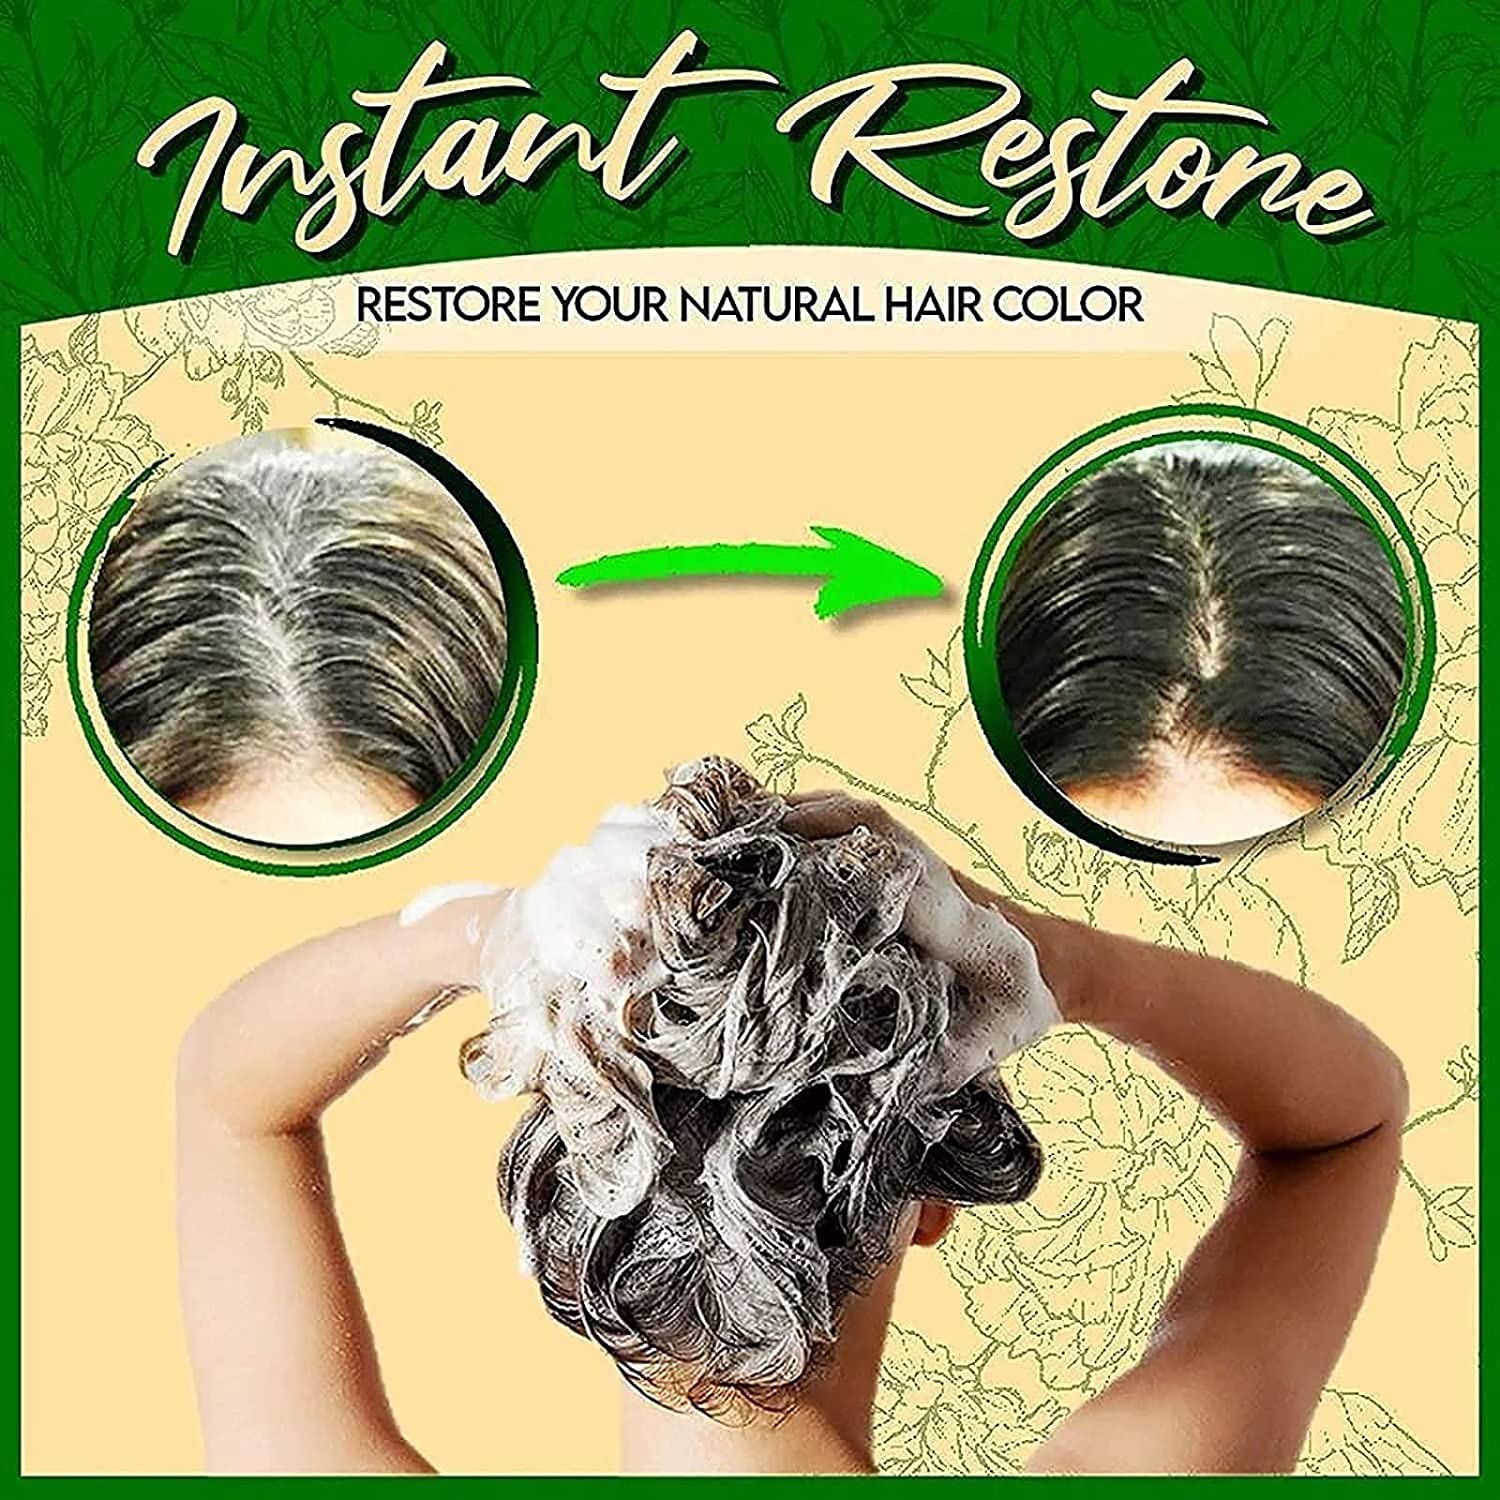 Mua Herbal Hair Dye Shampoo 3 In 1, 500ml Organic Natural 10 Mins Herbal  Hair Darkening Shampoo,Hair Care Multi-Color Hair Coloring Shampoo (Coffee)  trên Amazon Nhật chính hãng 2023 | Giaonhan247